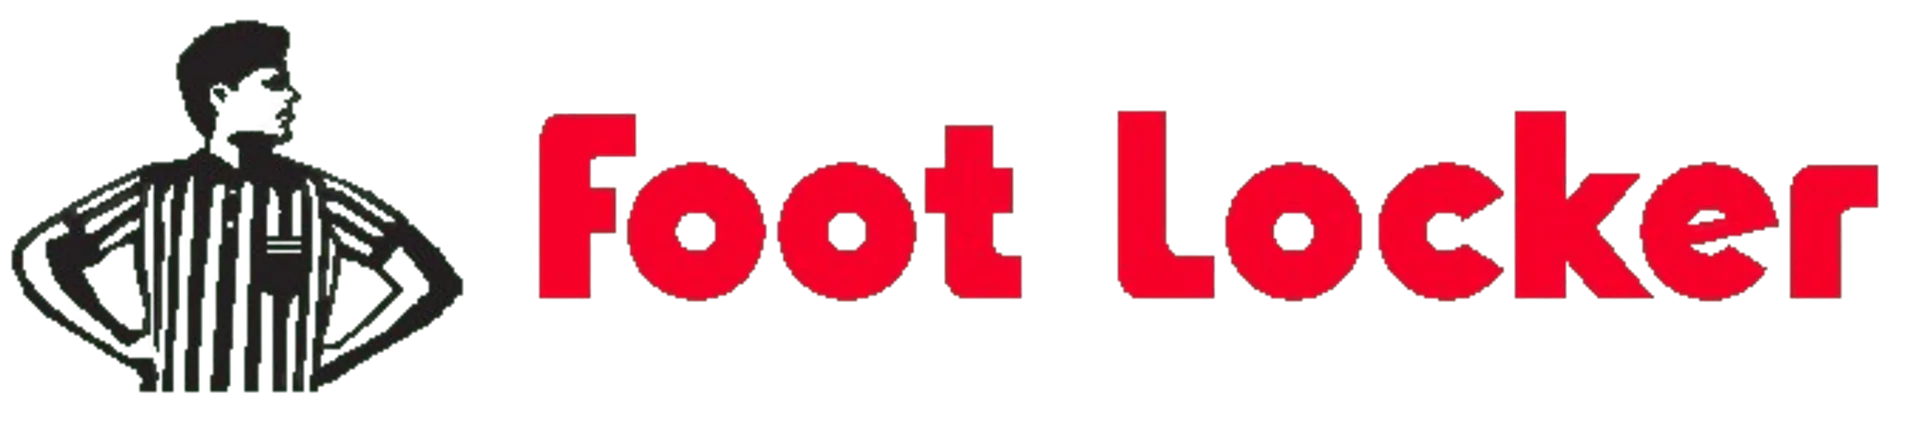 FOOT LOCKER logo de folhetos